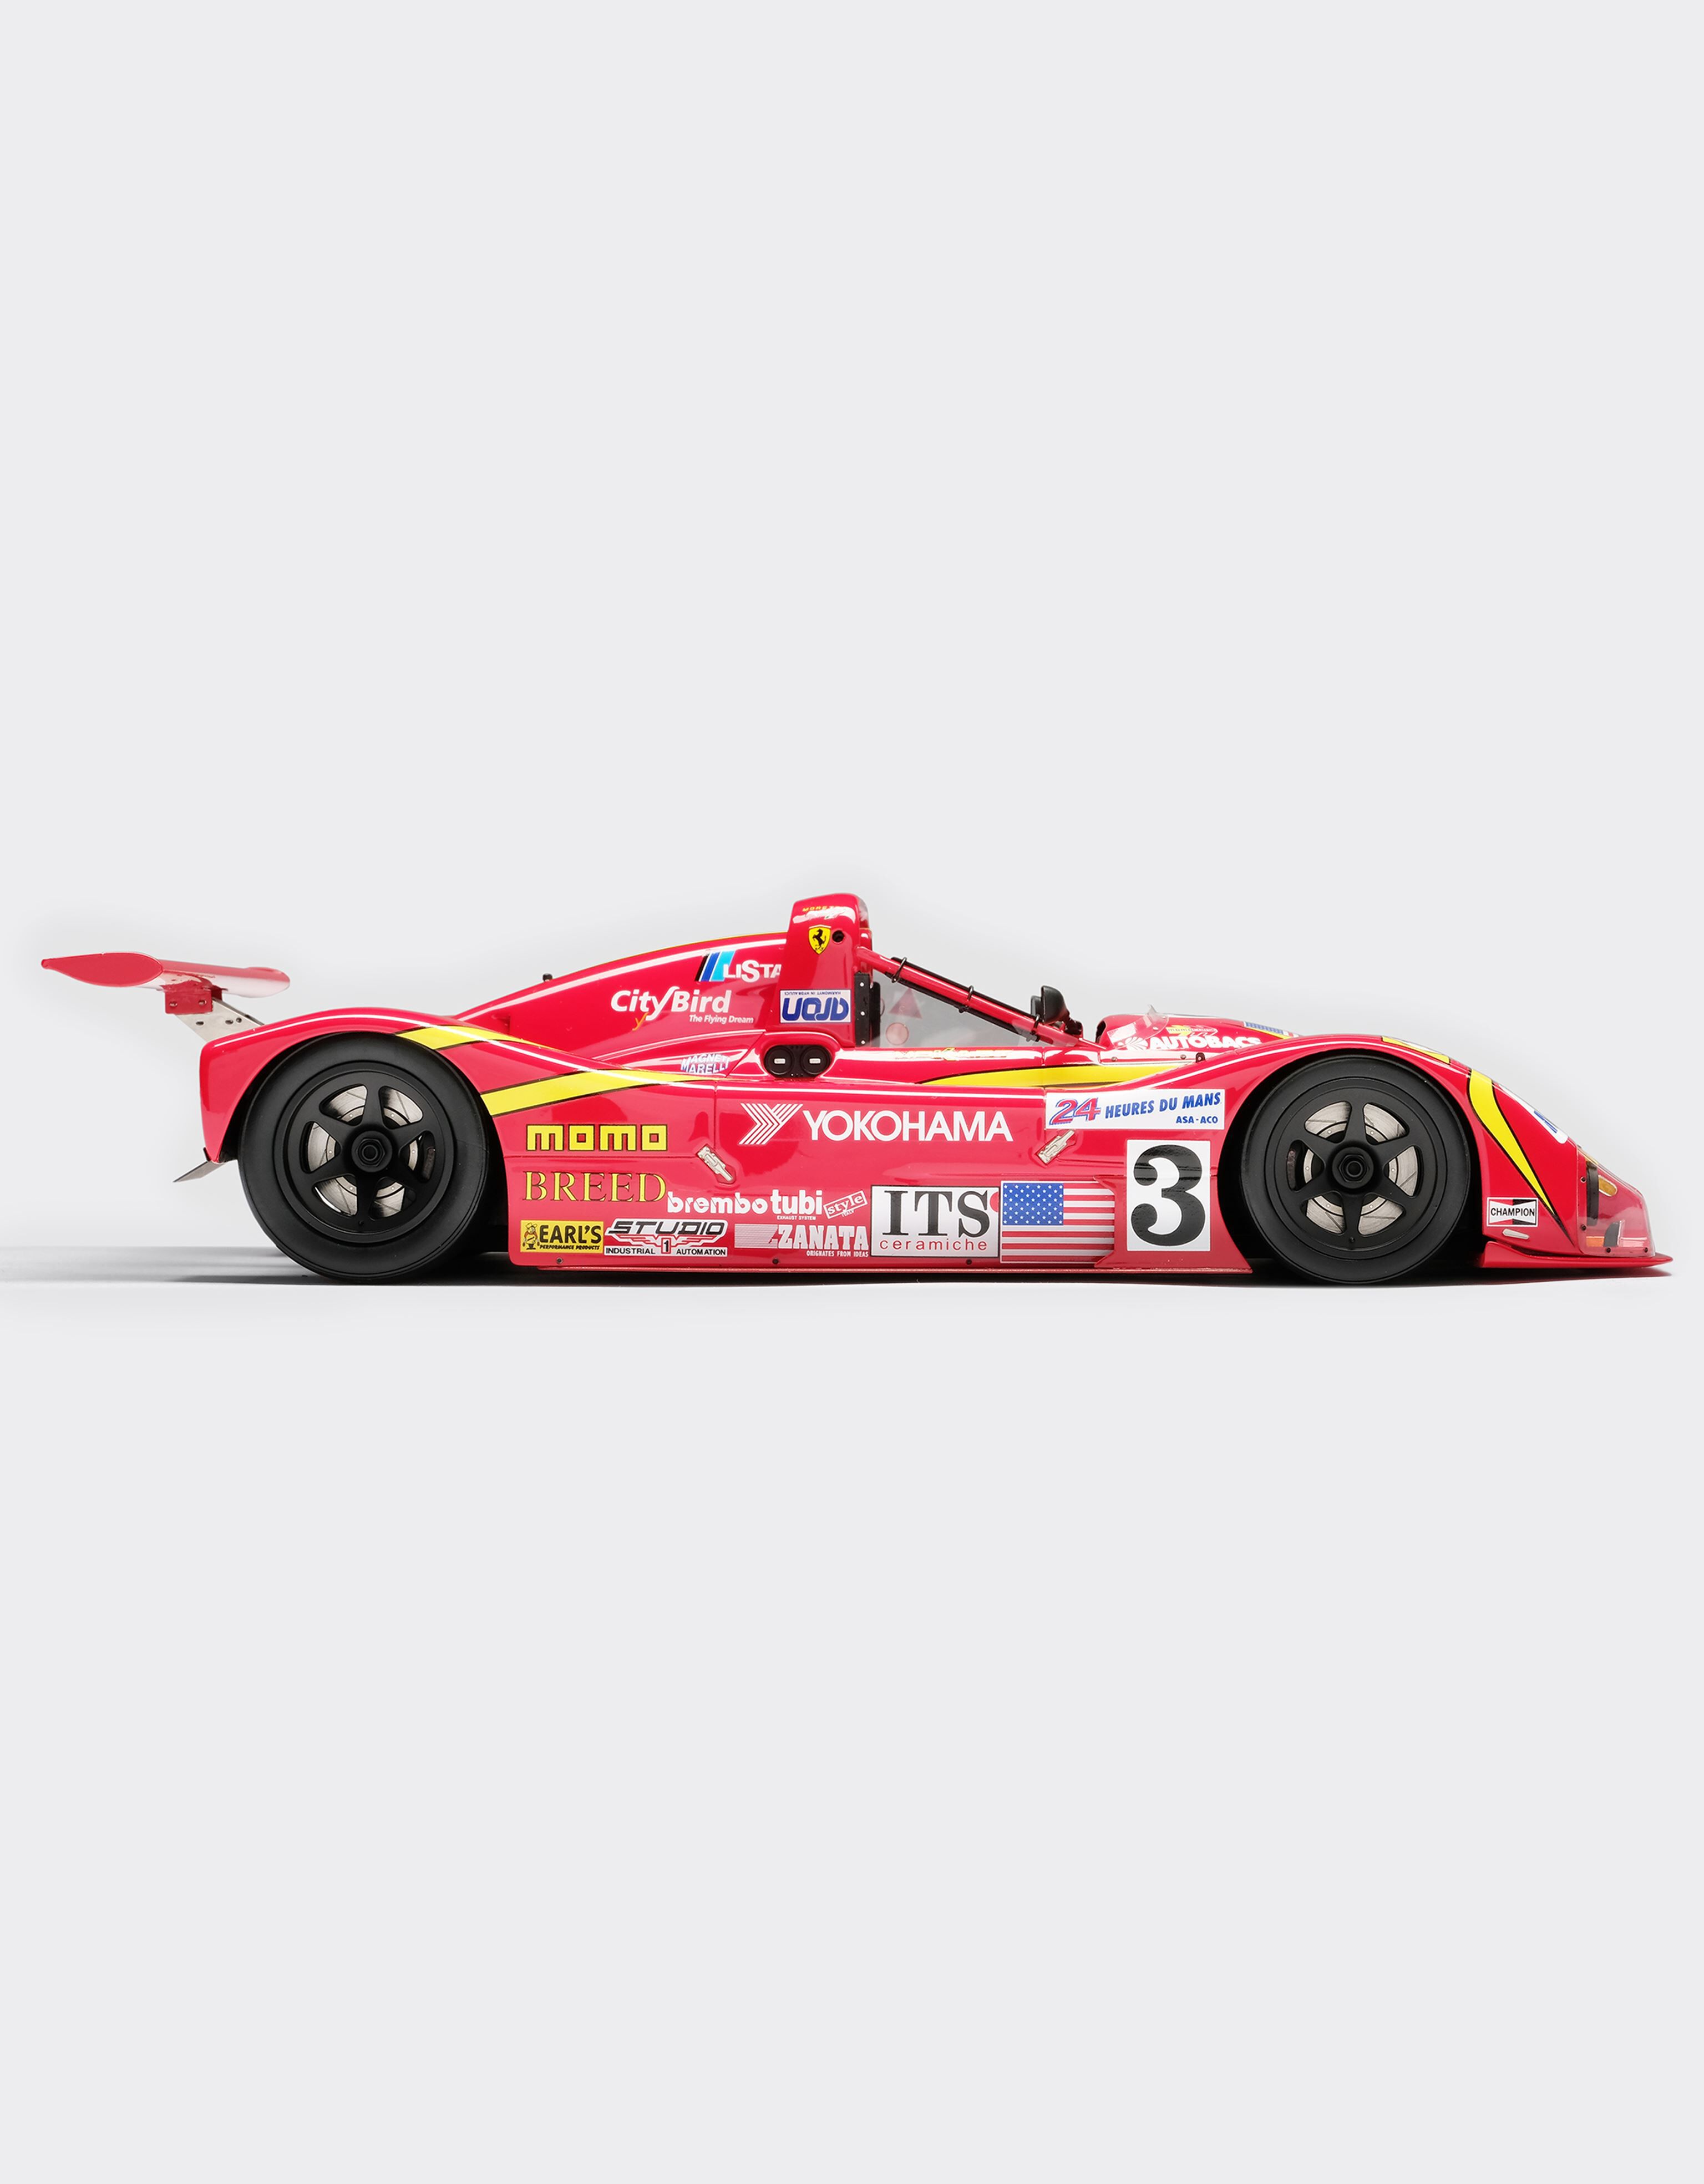 Ferrari Ferrari 333SP Le Mans model in 1:18 scale Red L7589f